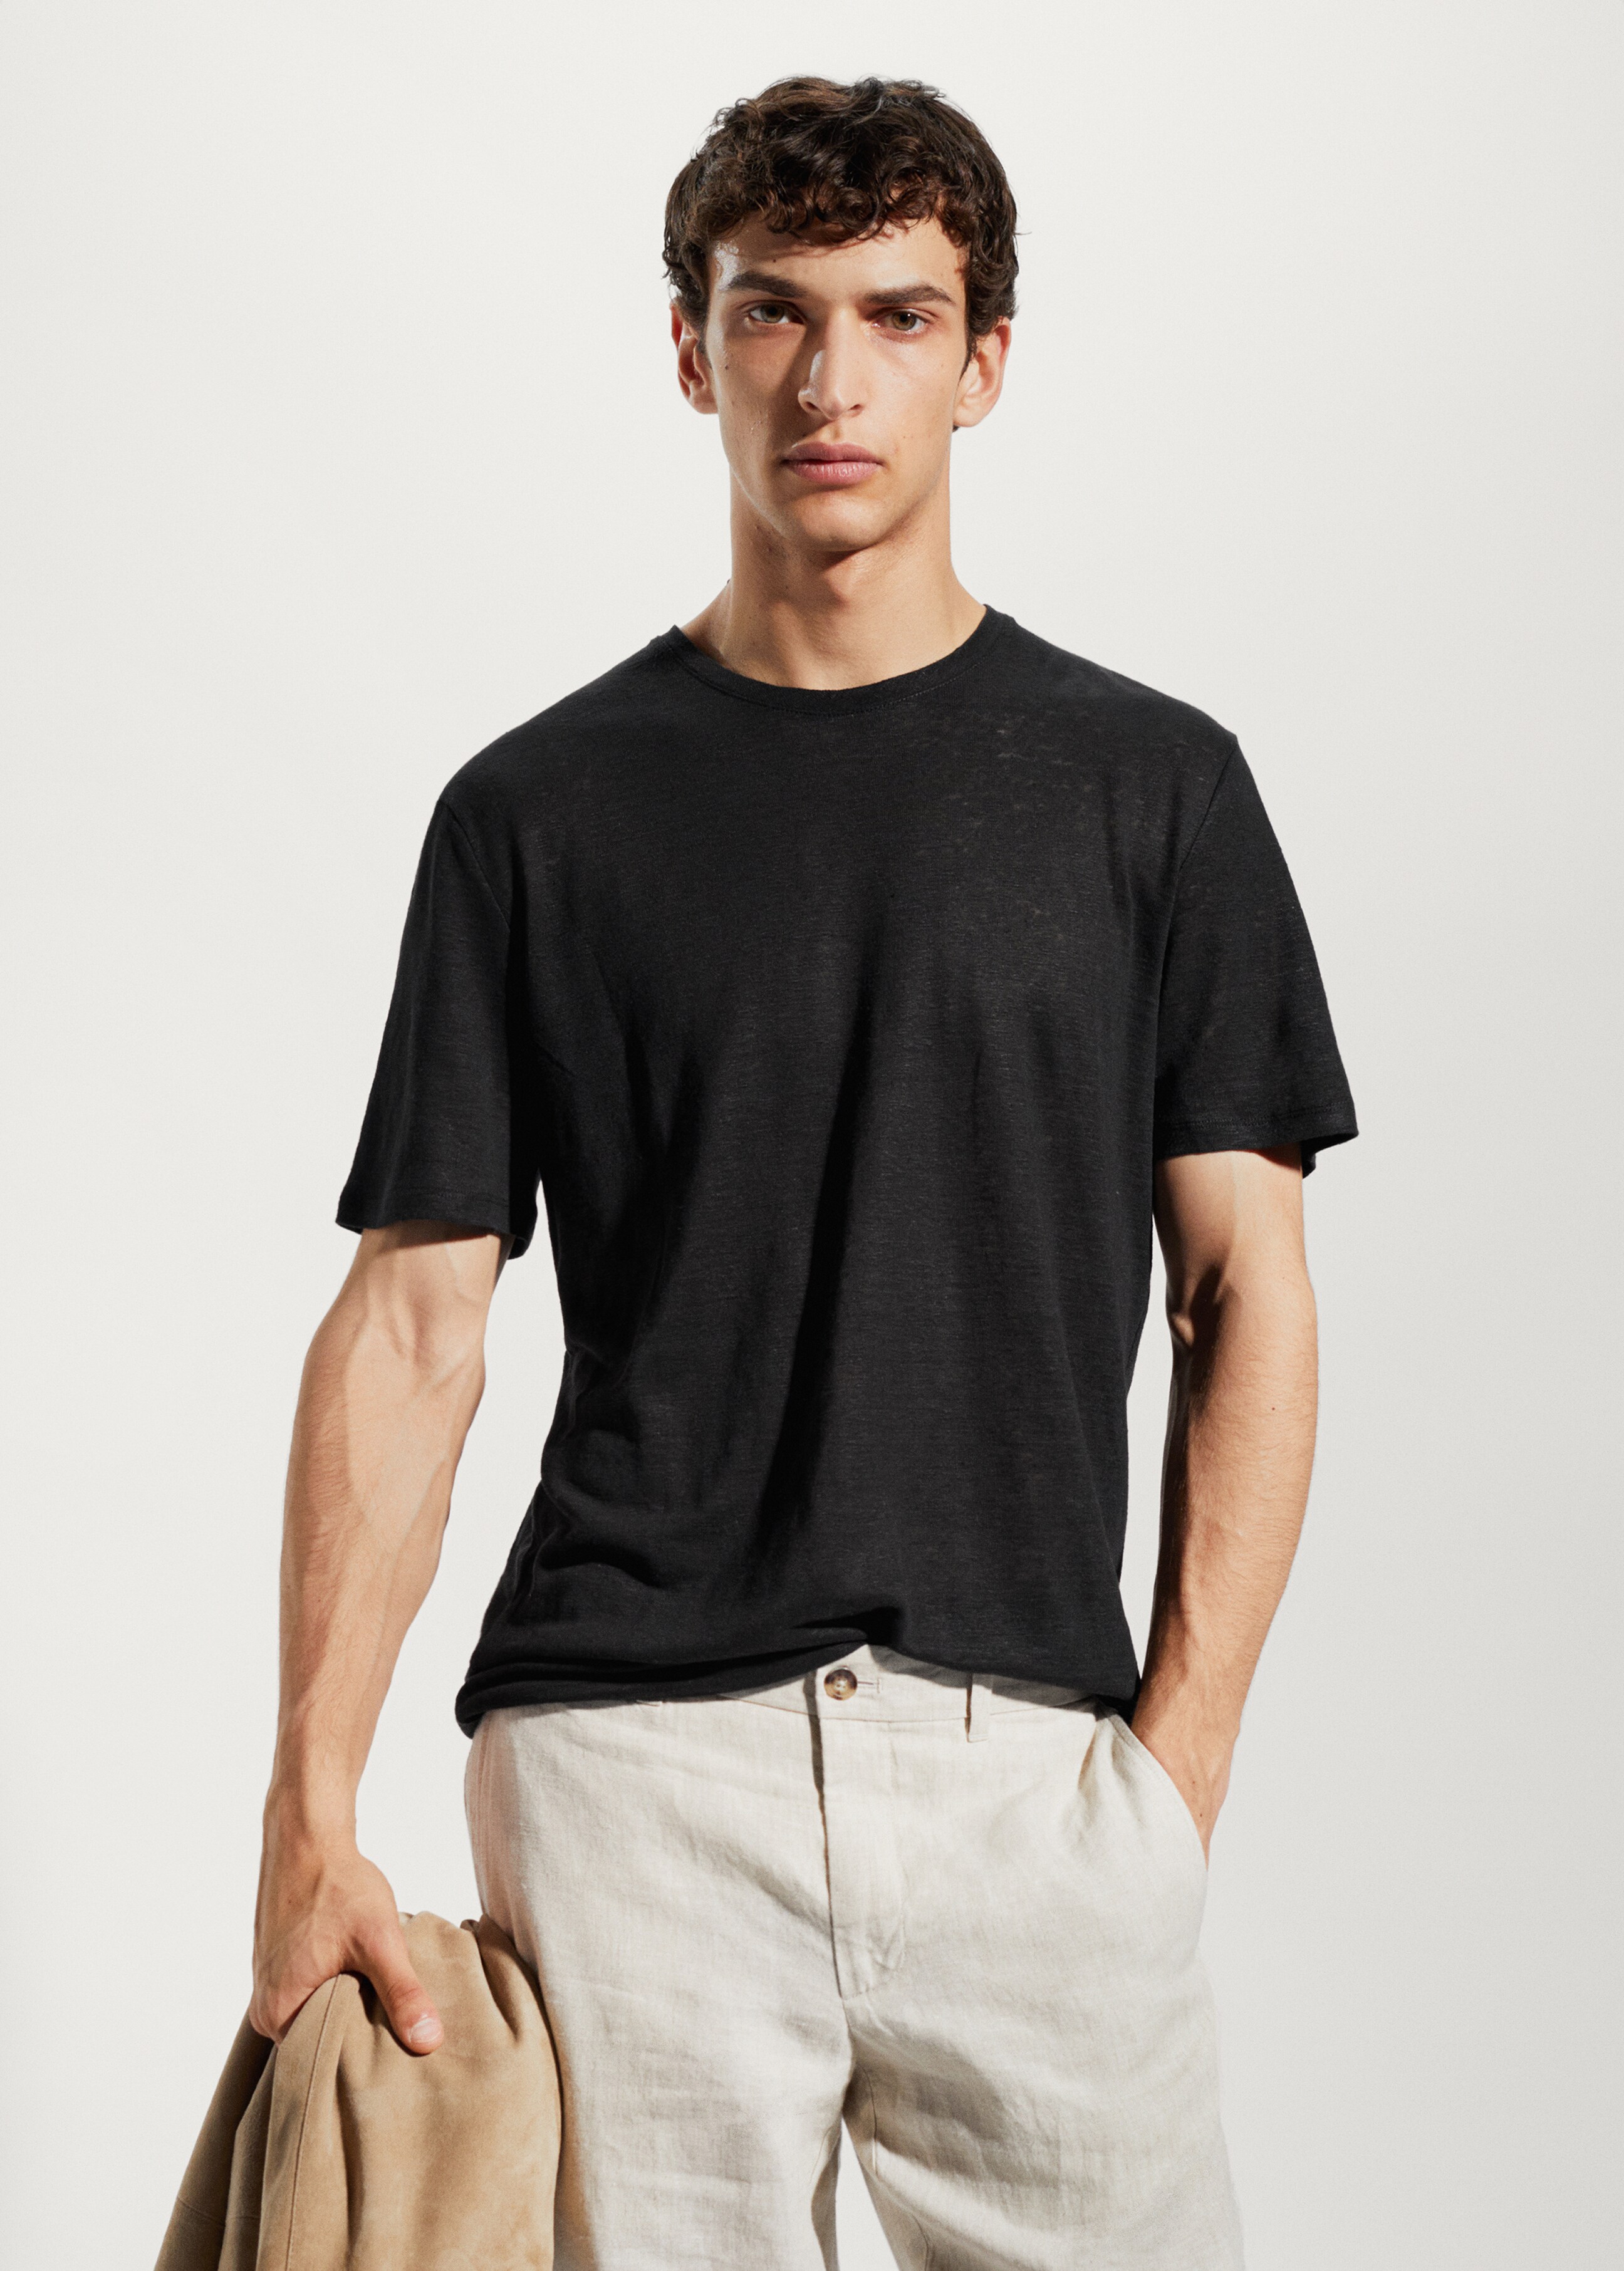 Camiseta Slim Fit 100% lino - Plano medio